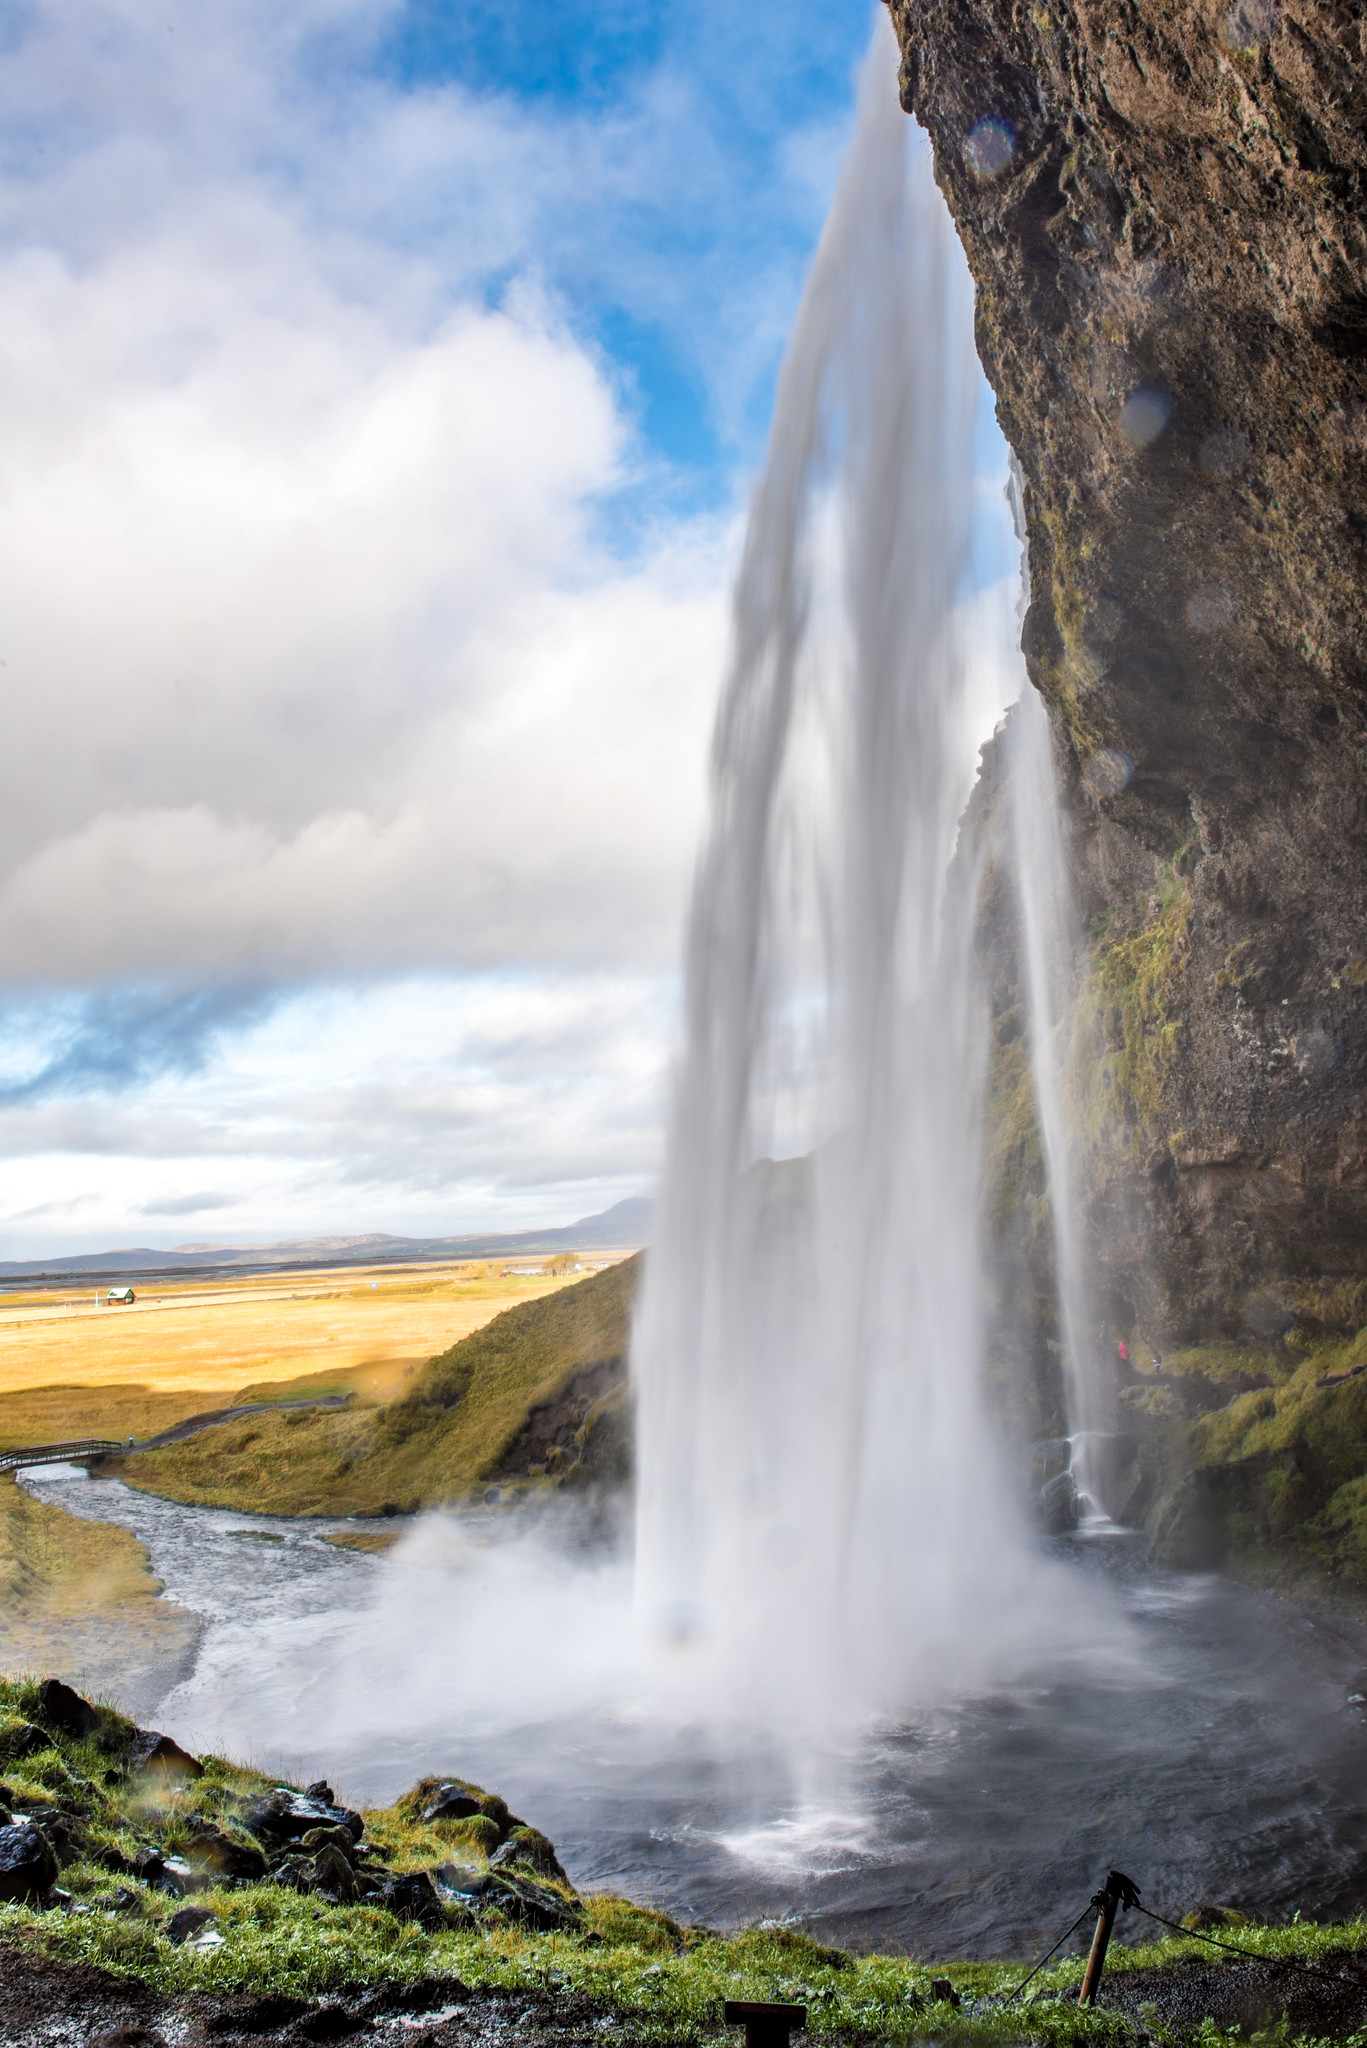 Seljalandsfoss, Iceland 冰島 西爾佳蘭地瀑布